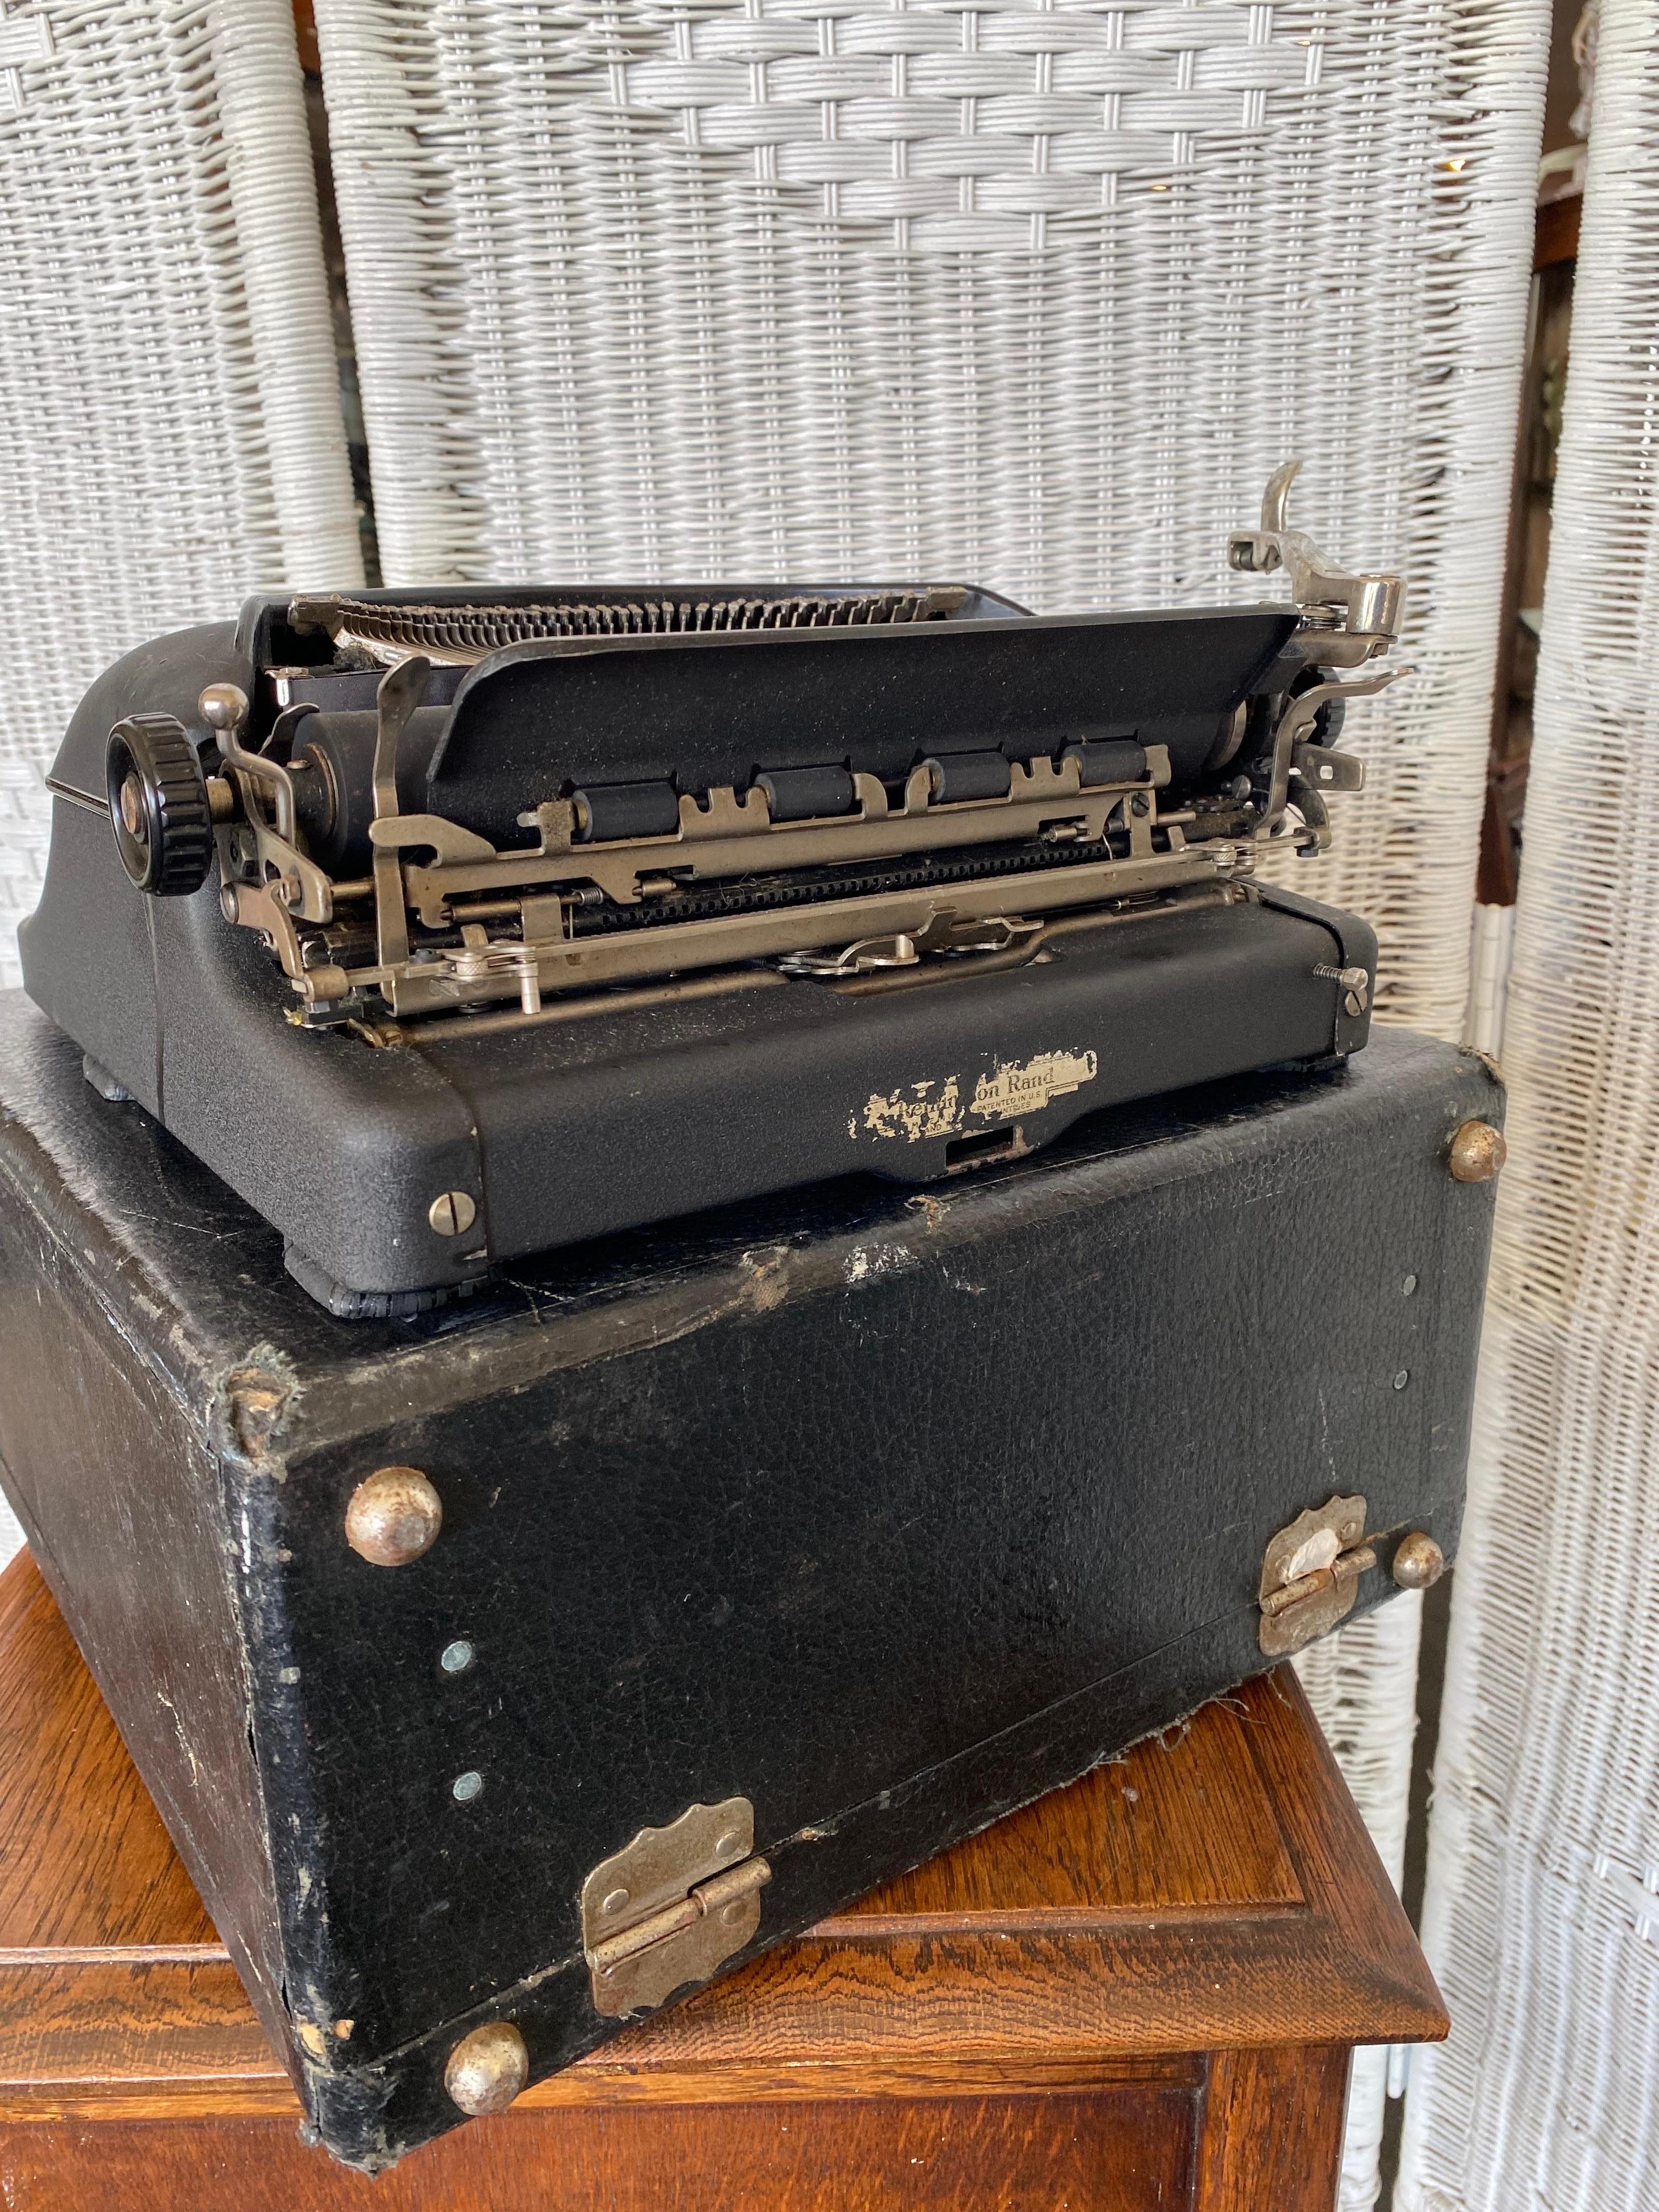 Très belle machine à écrire Remington modèle 5 noire des années 1940, avec sa mallette de transport d'origine. Cette machine à écrire fonctionne comme un charme et tape en douceur sans aucun Hinderer, ce qui témoigne d'une excellente qualité de